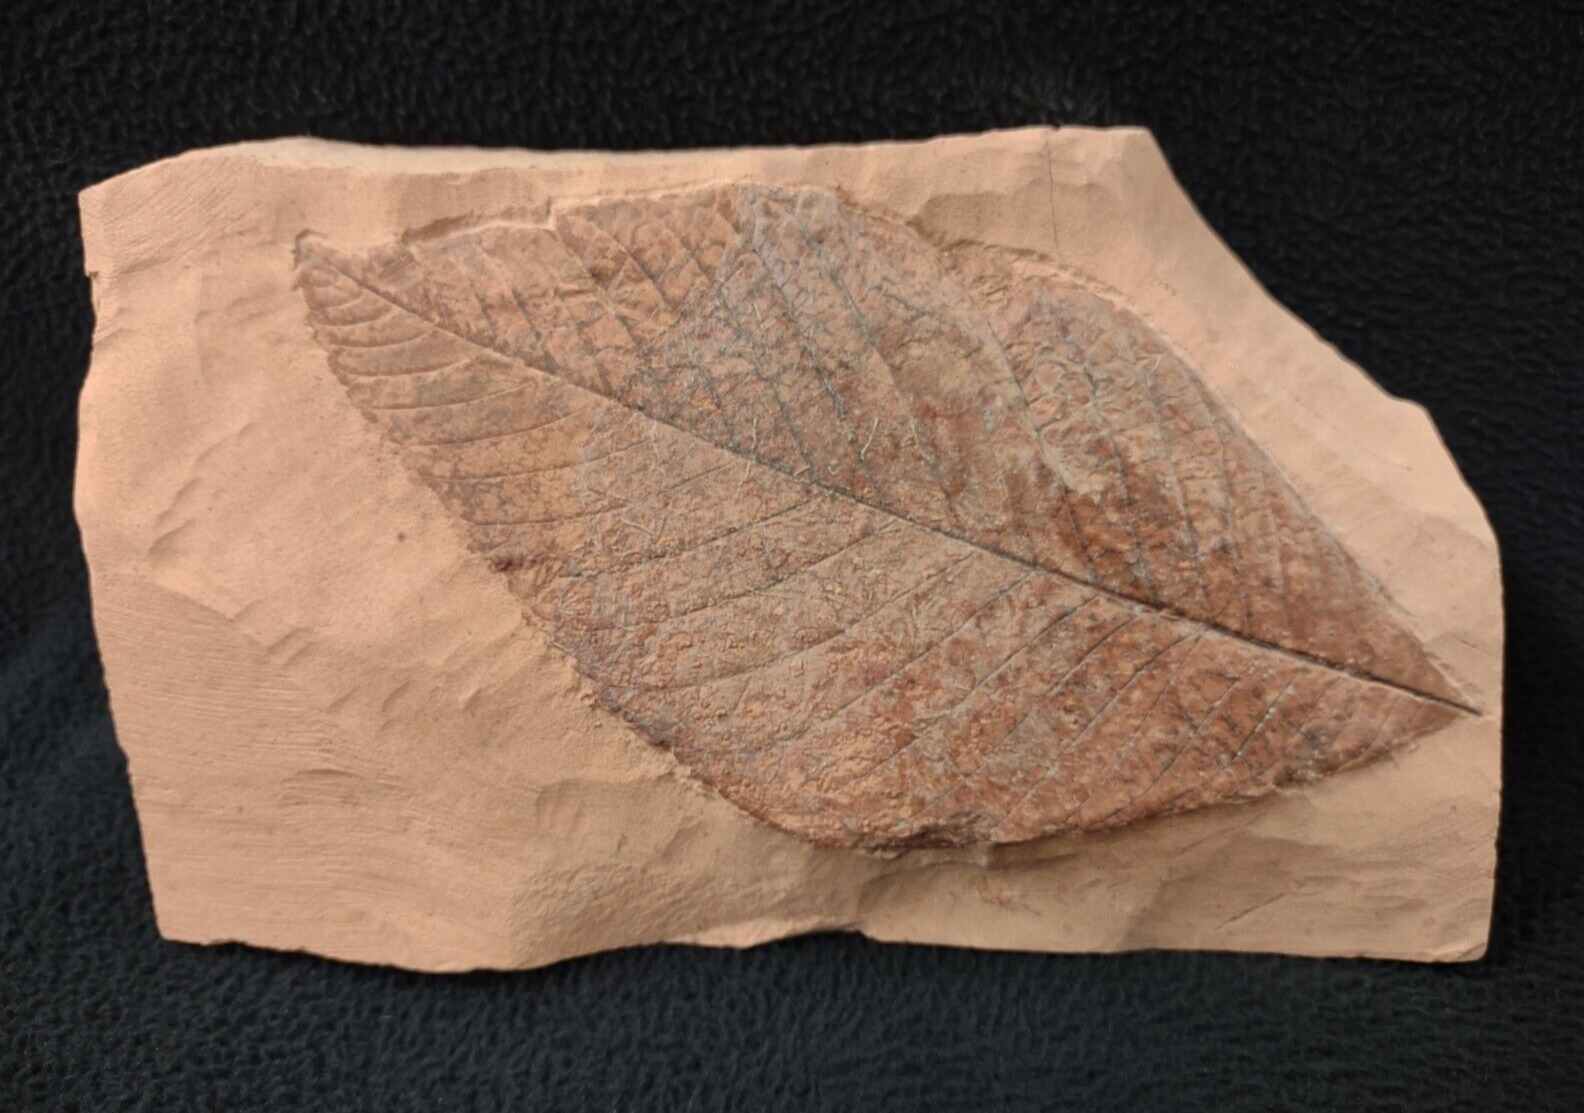 Big Boy Leaf Fossil, Fort Union Formation, Glendive, MT